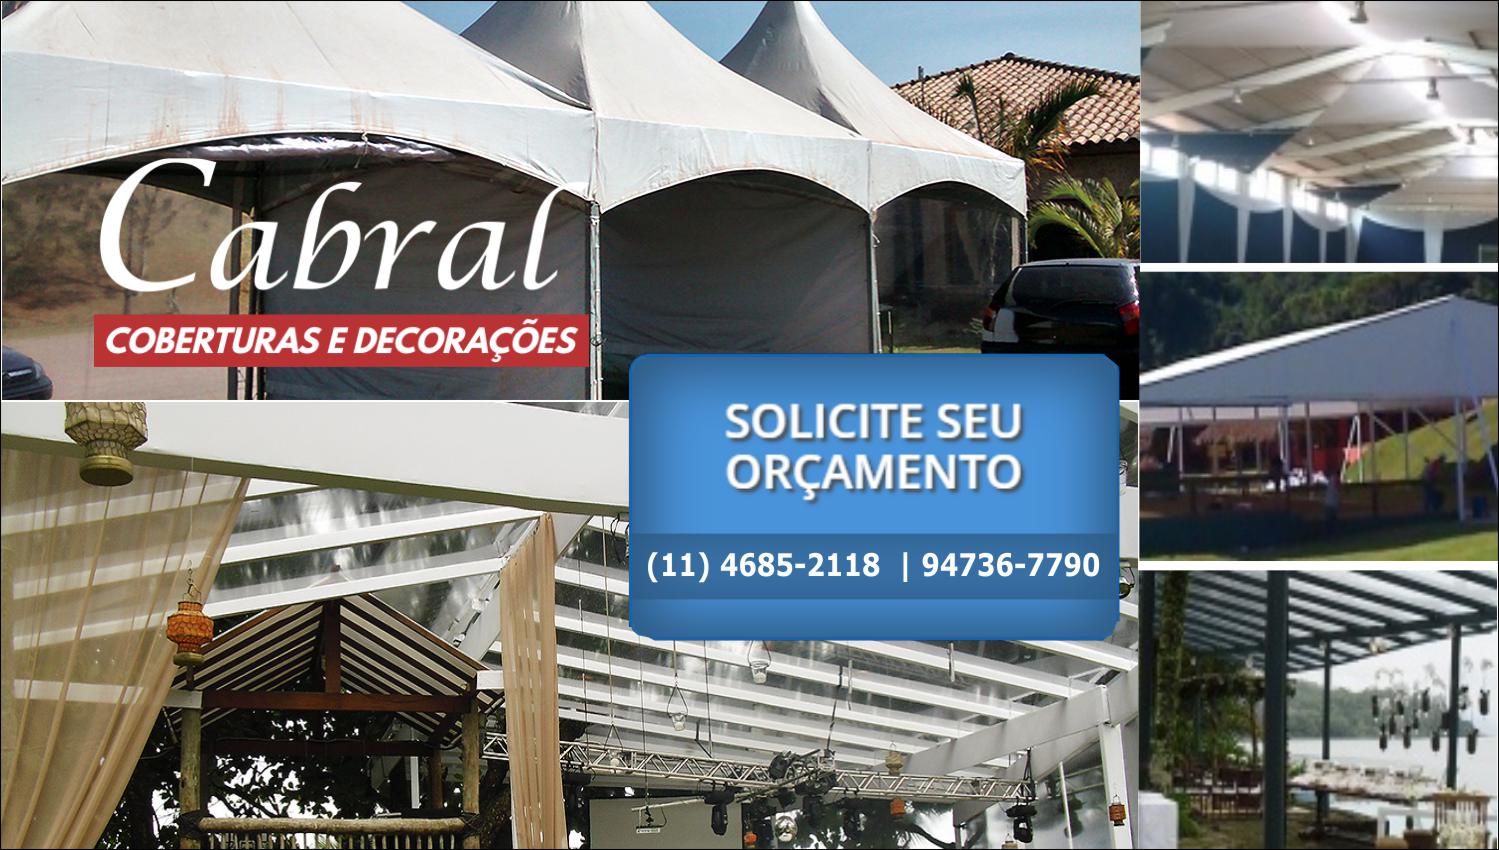 Aluguel de Coberturas Para Festas e Eventos em São Paulo e Região |Cabral Coberturas